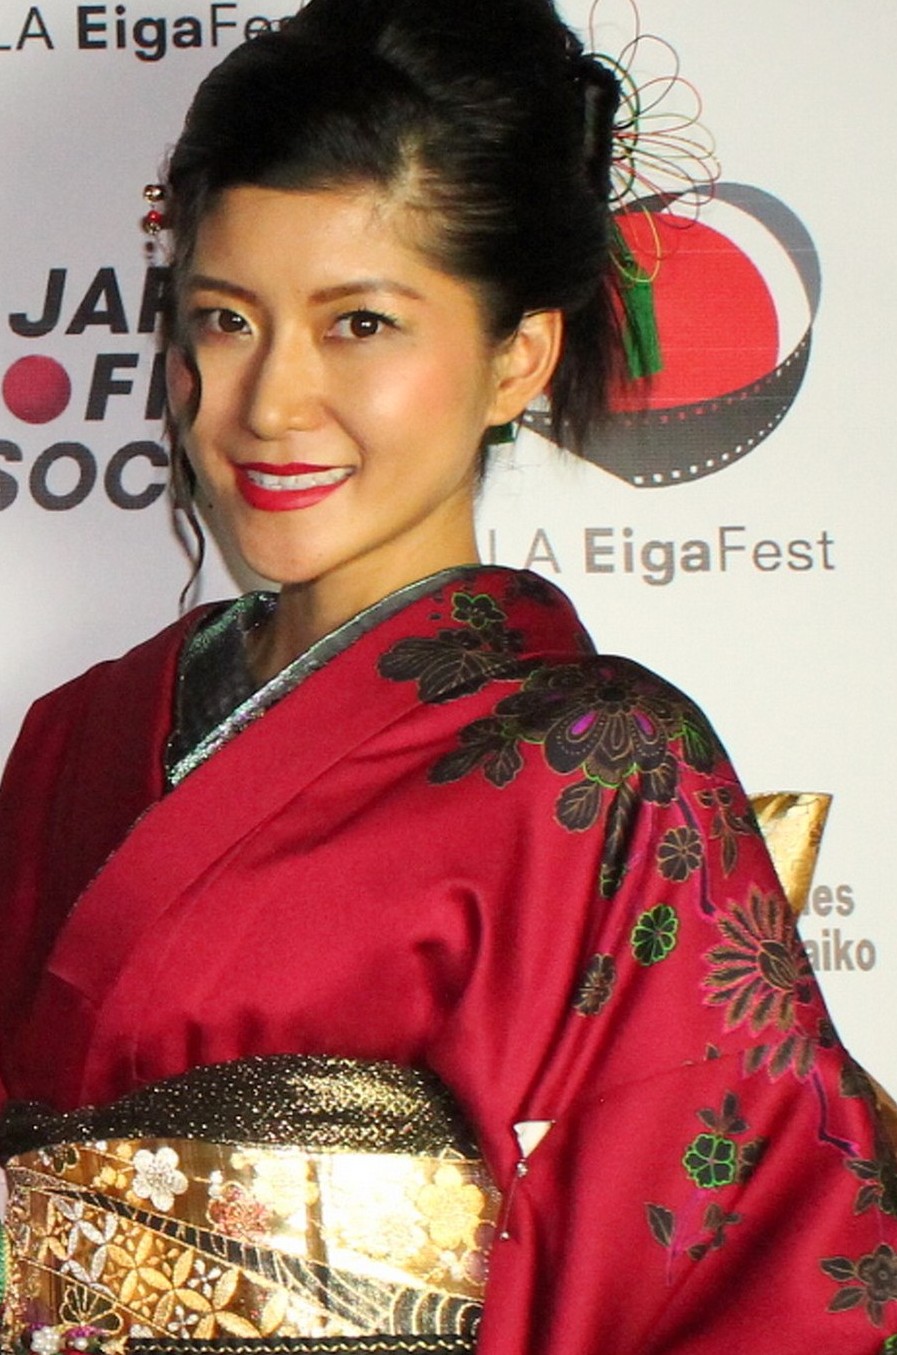 Hazuki Kato